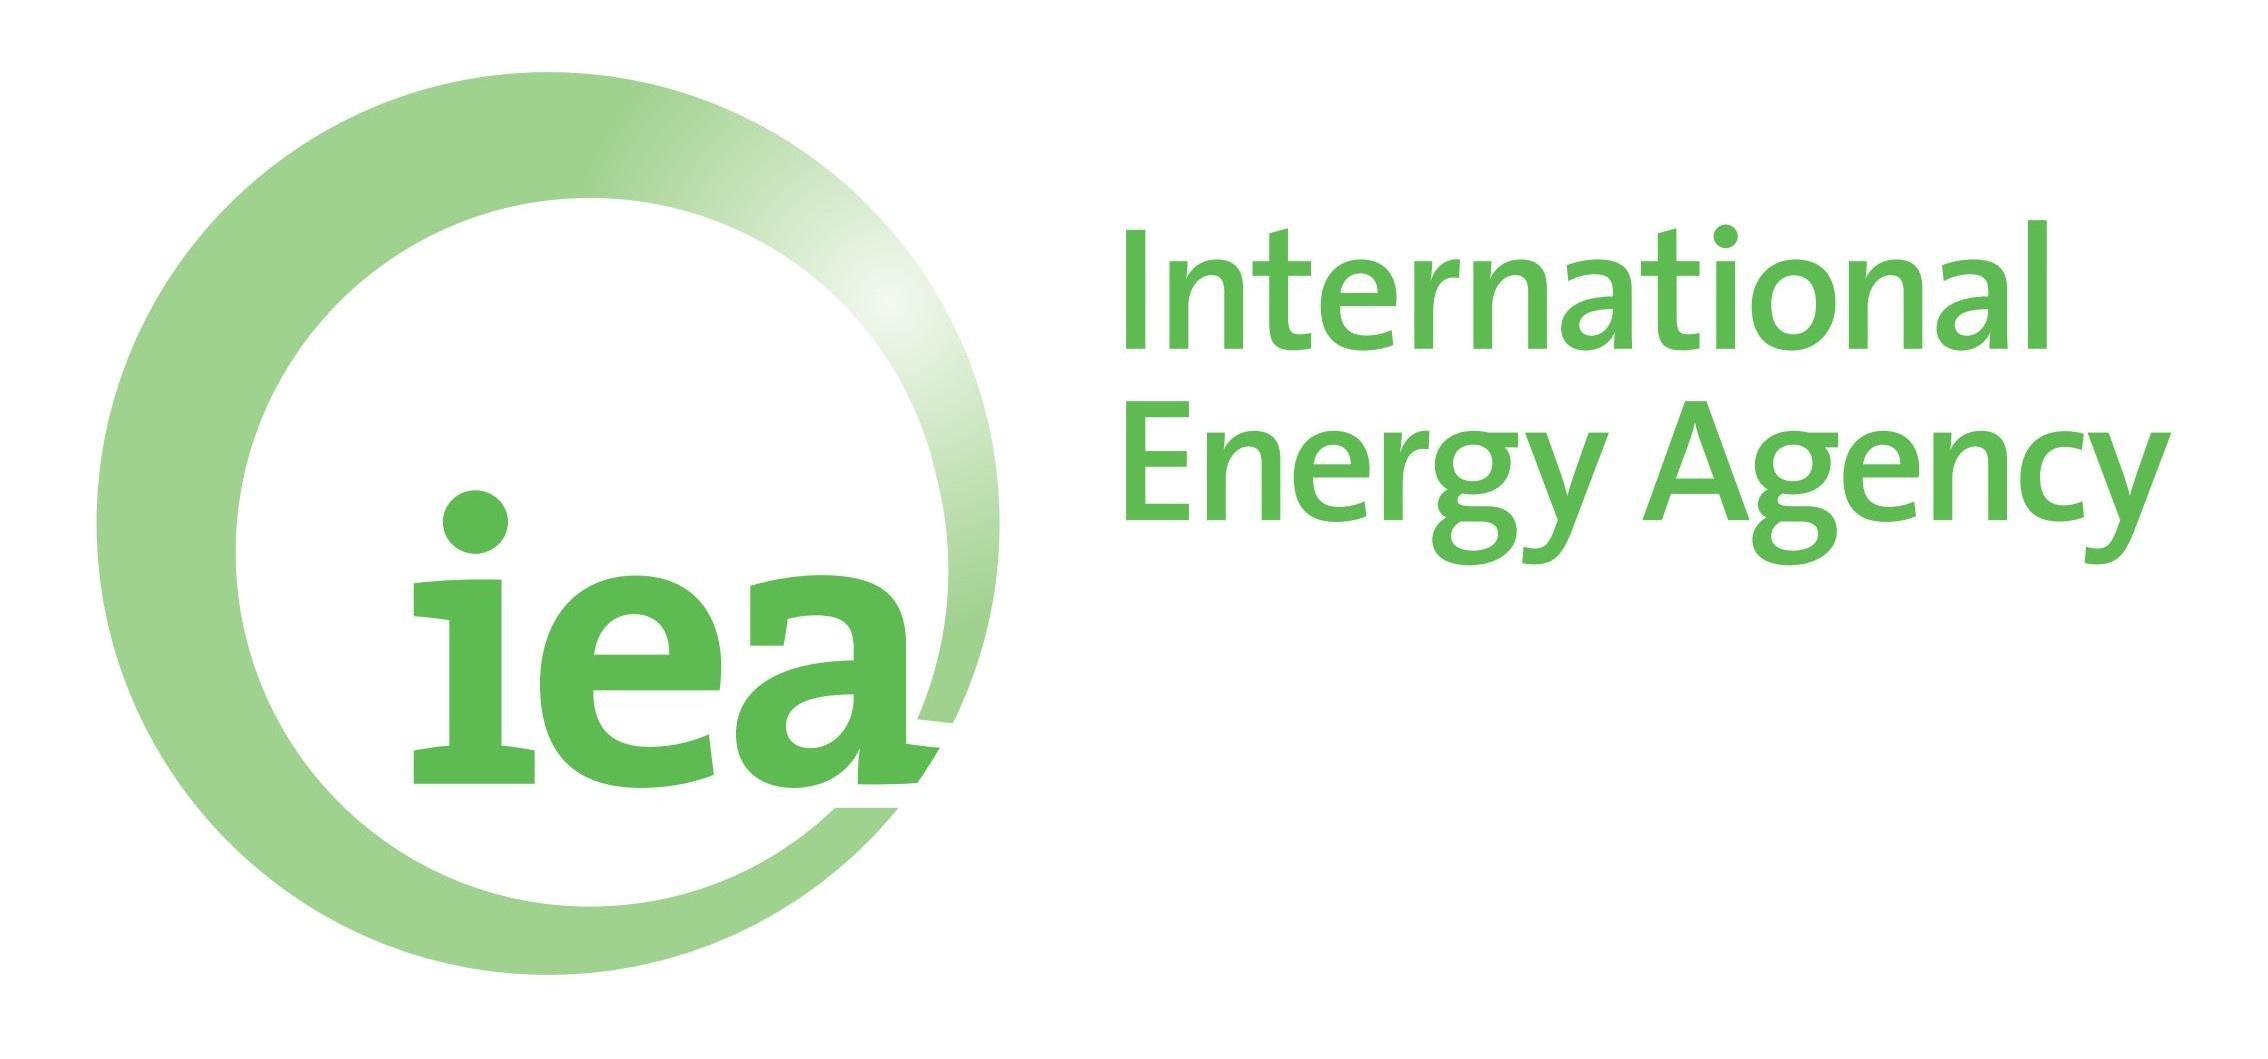 Il logo dell'Agenzia Internazionale dell'Energia in verde su sfondo bianco